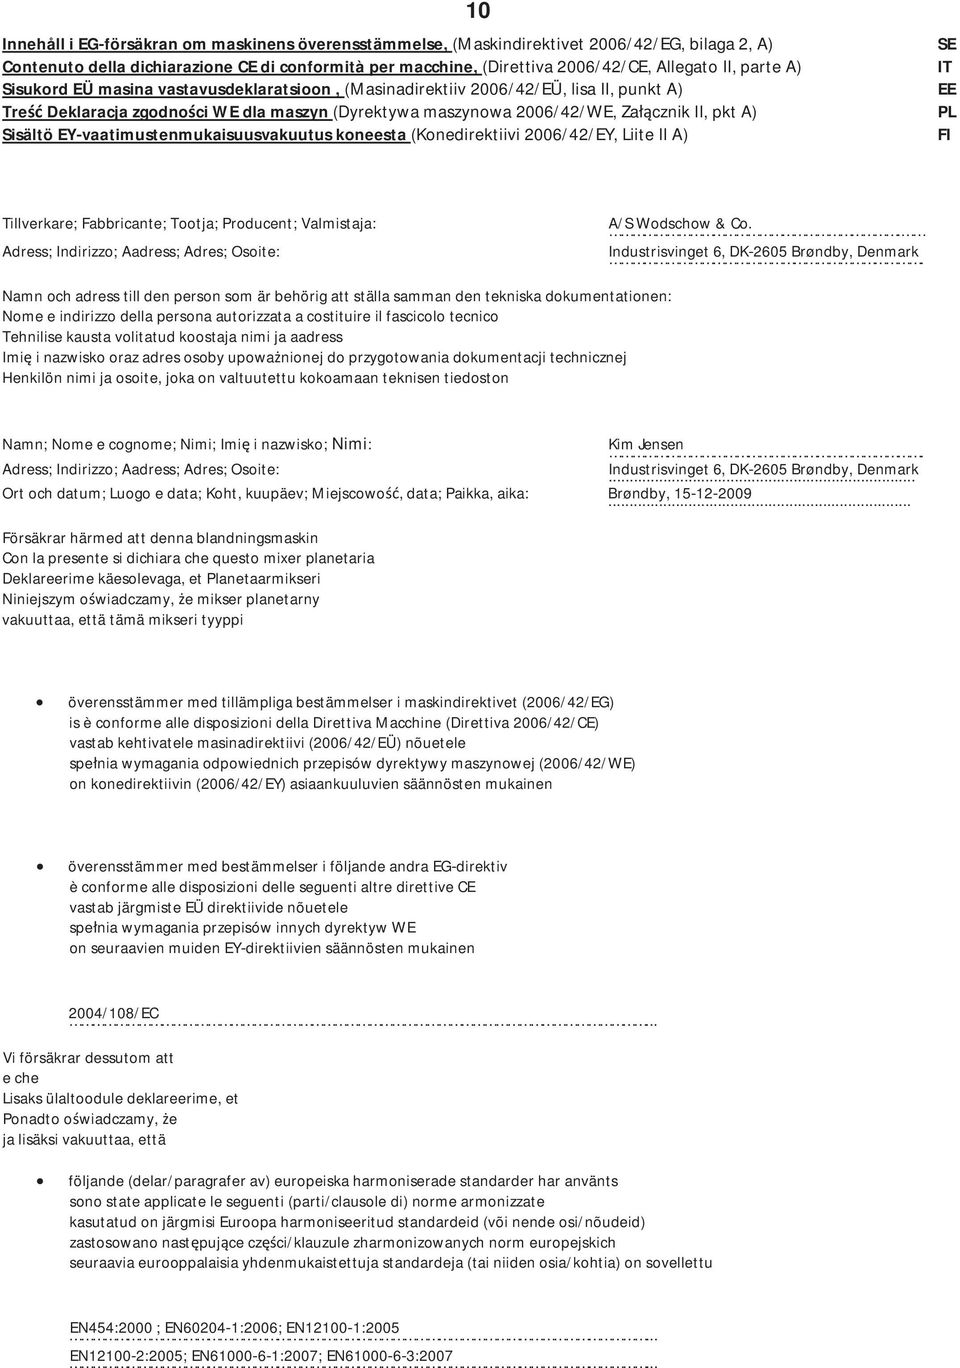 SisältöEYvaatimustenmukaisuusvakuutuskoneesta(Konedirektiivi2006/42/EY,LiiteIIA) FI T illverkare;fabbrica A/SWodschow&Co.